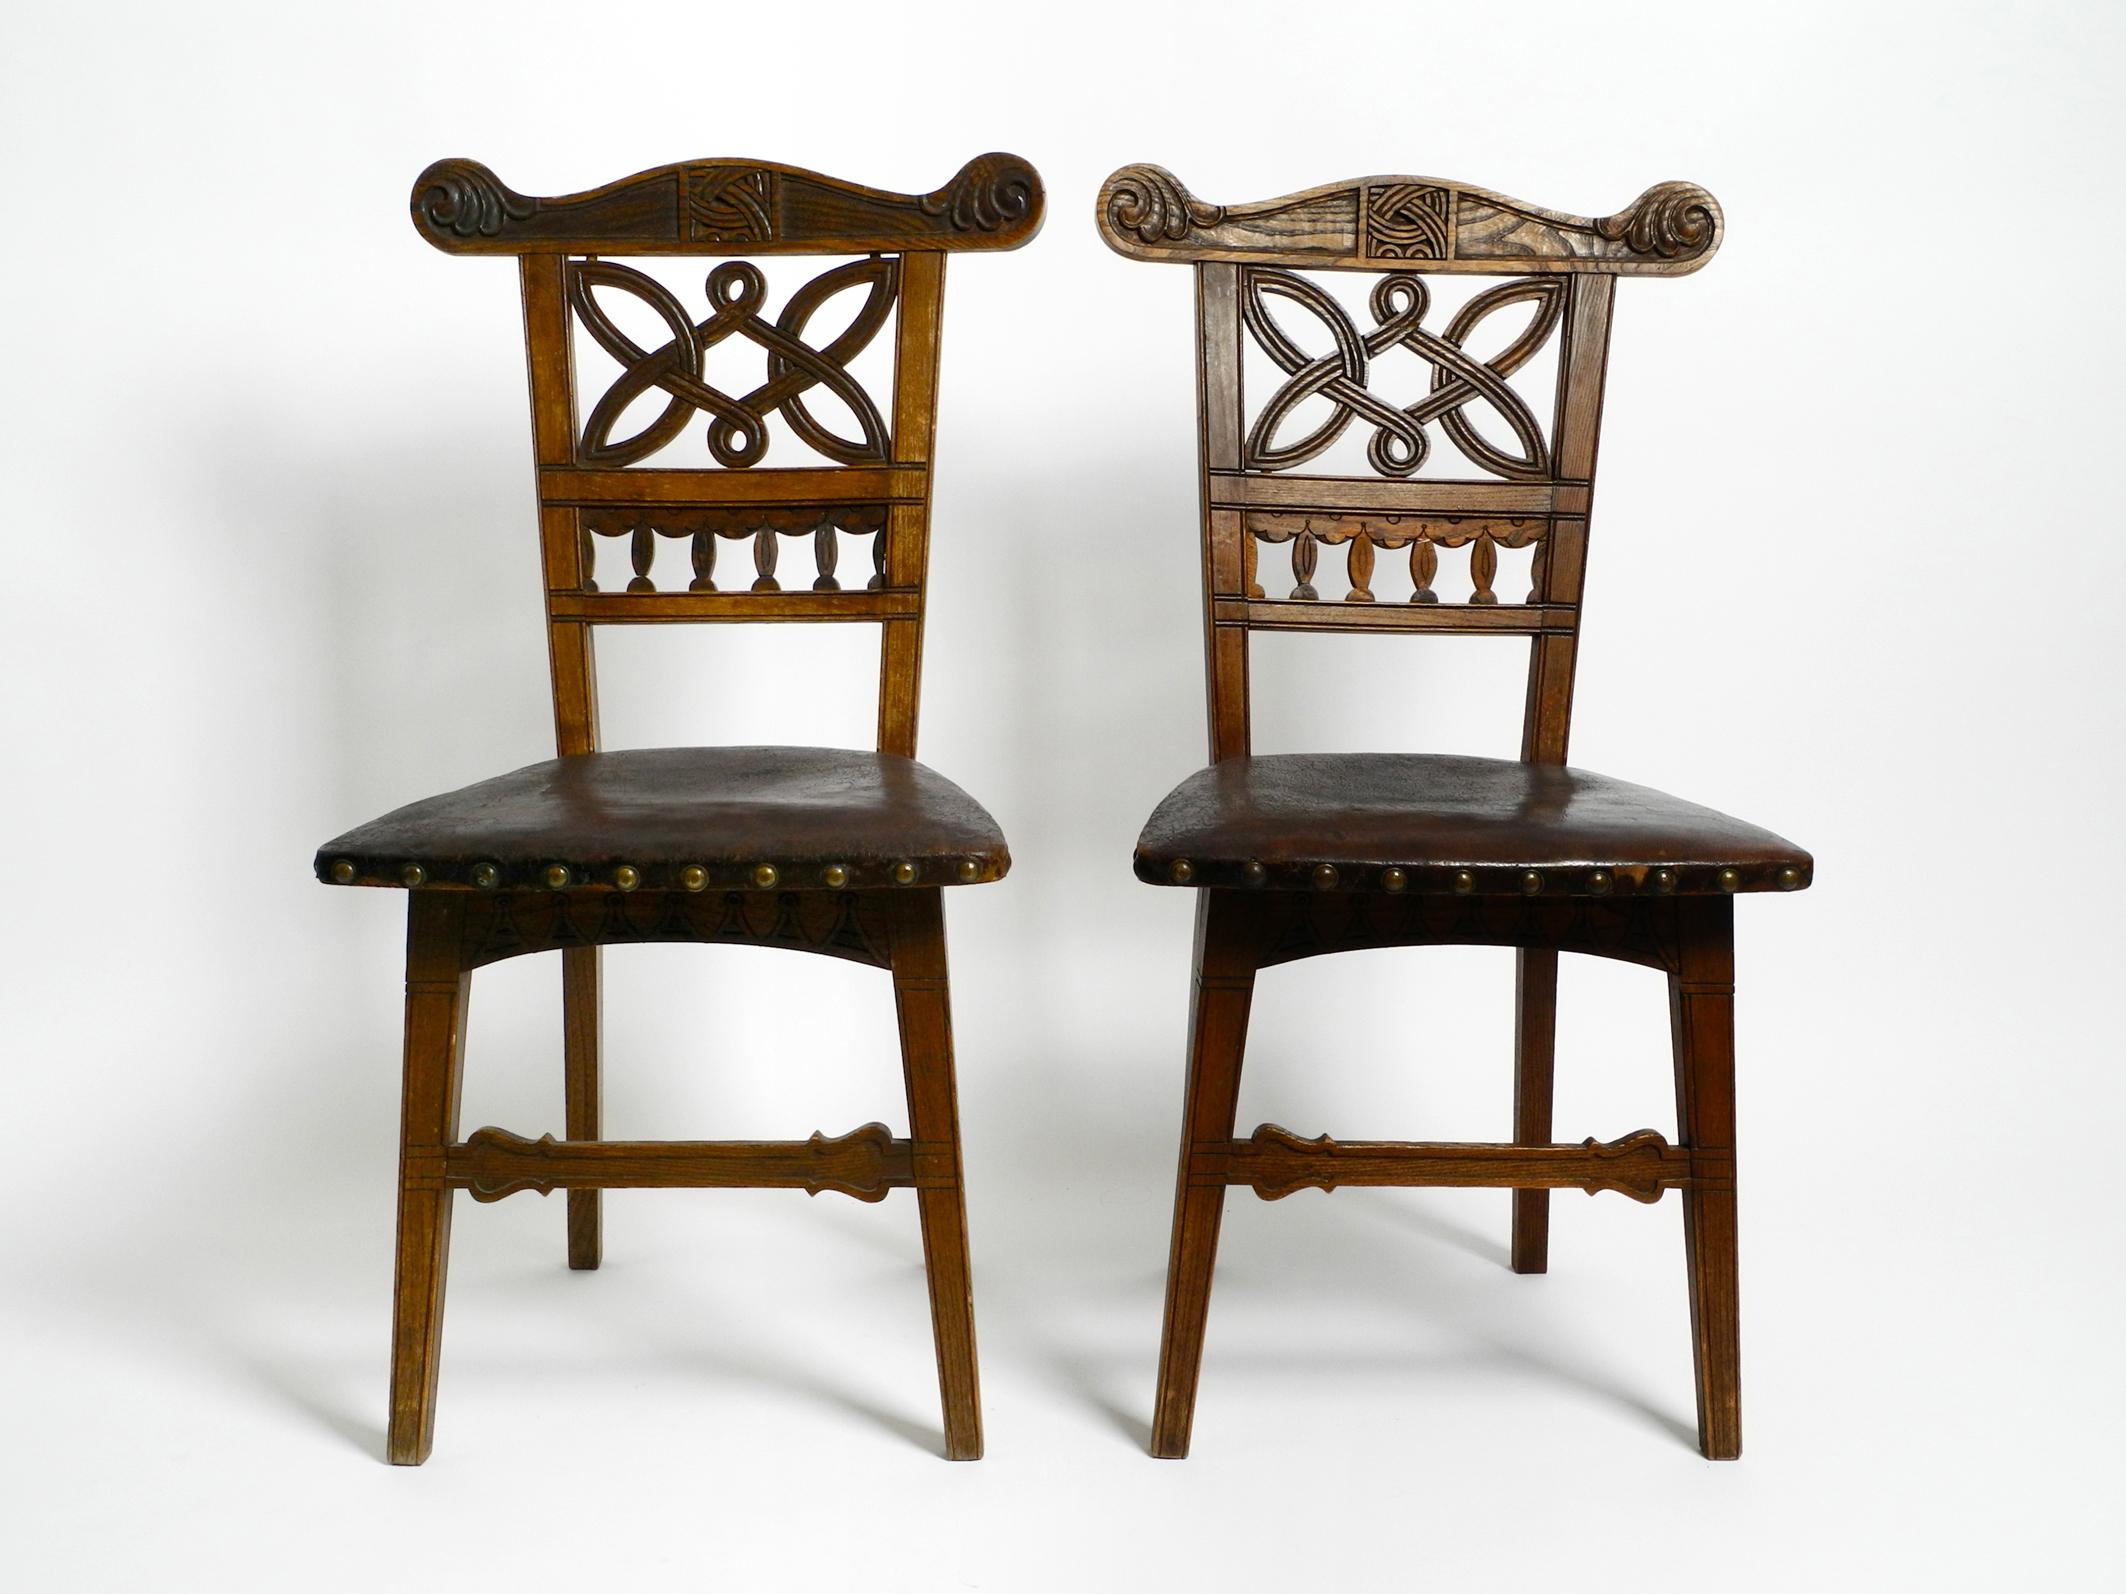 Zwei schöne verschnörkelte Jugendstil-Holzstühle.
Wahrscheinlich um 1900 in Frankreich hergestellt.
Die originalen genieteten Ledersitze sind noch vorhanden.
Tolle, sehr komplexe Produktion mit vielen schönen Details.
Stühle eignen sich auch als